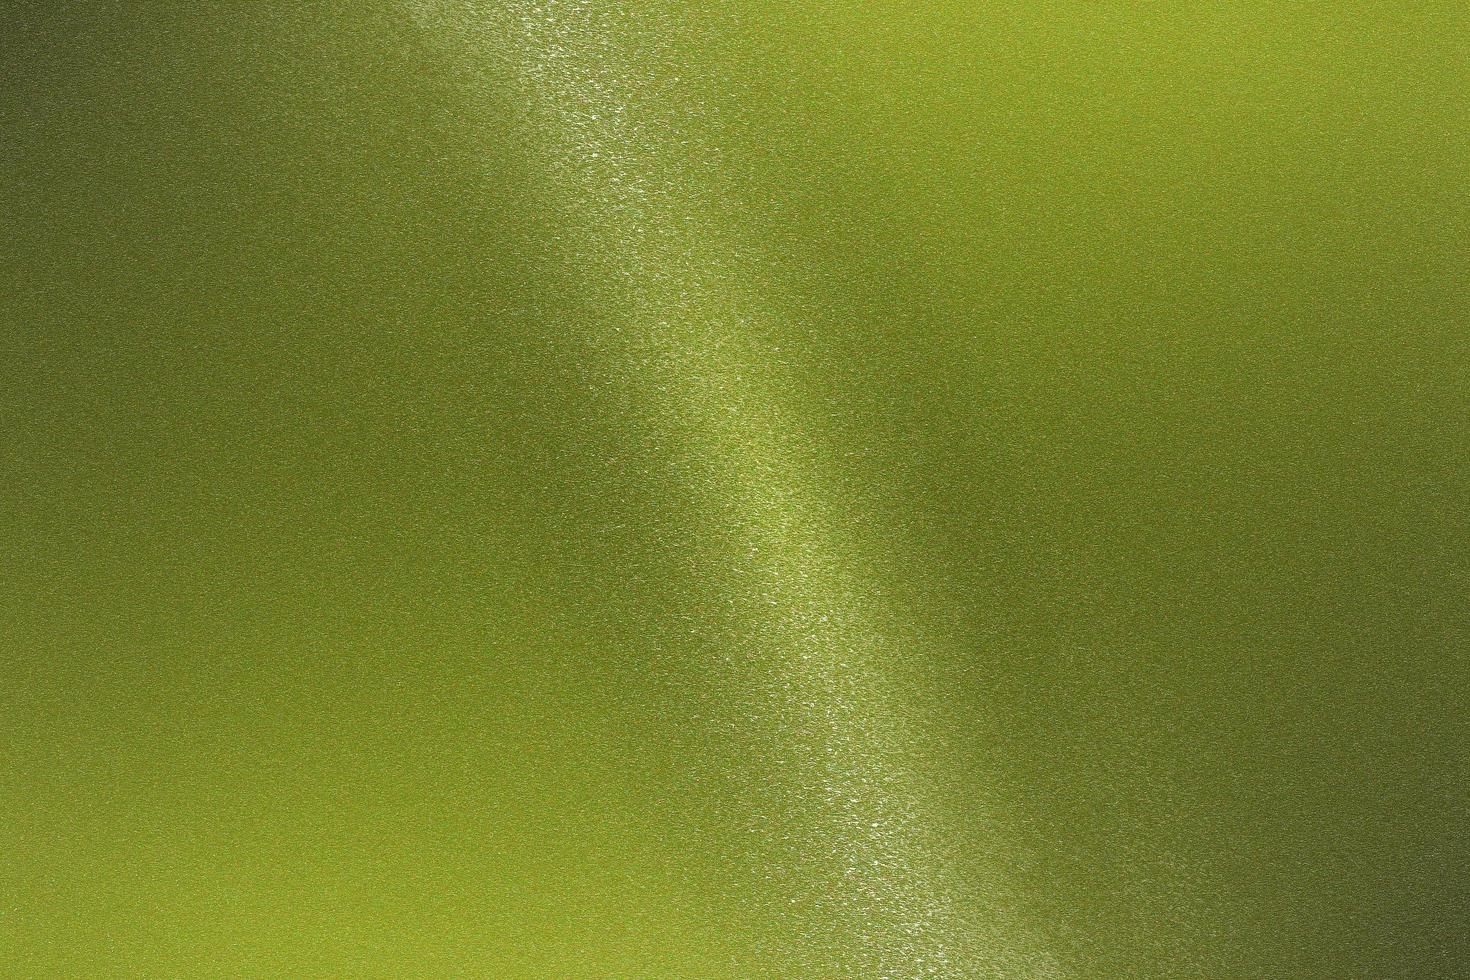 leuchtende hellgrüne metallische Wand mit Kopienraum, Tapetenbeschaffenheitshintergrund foto